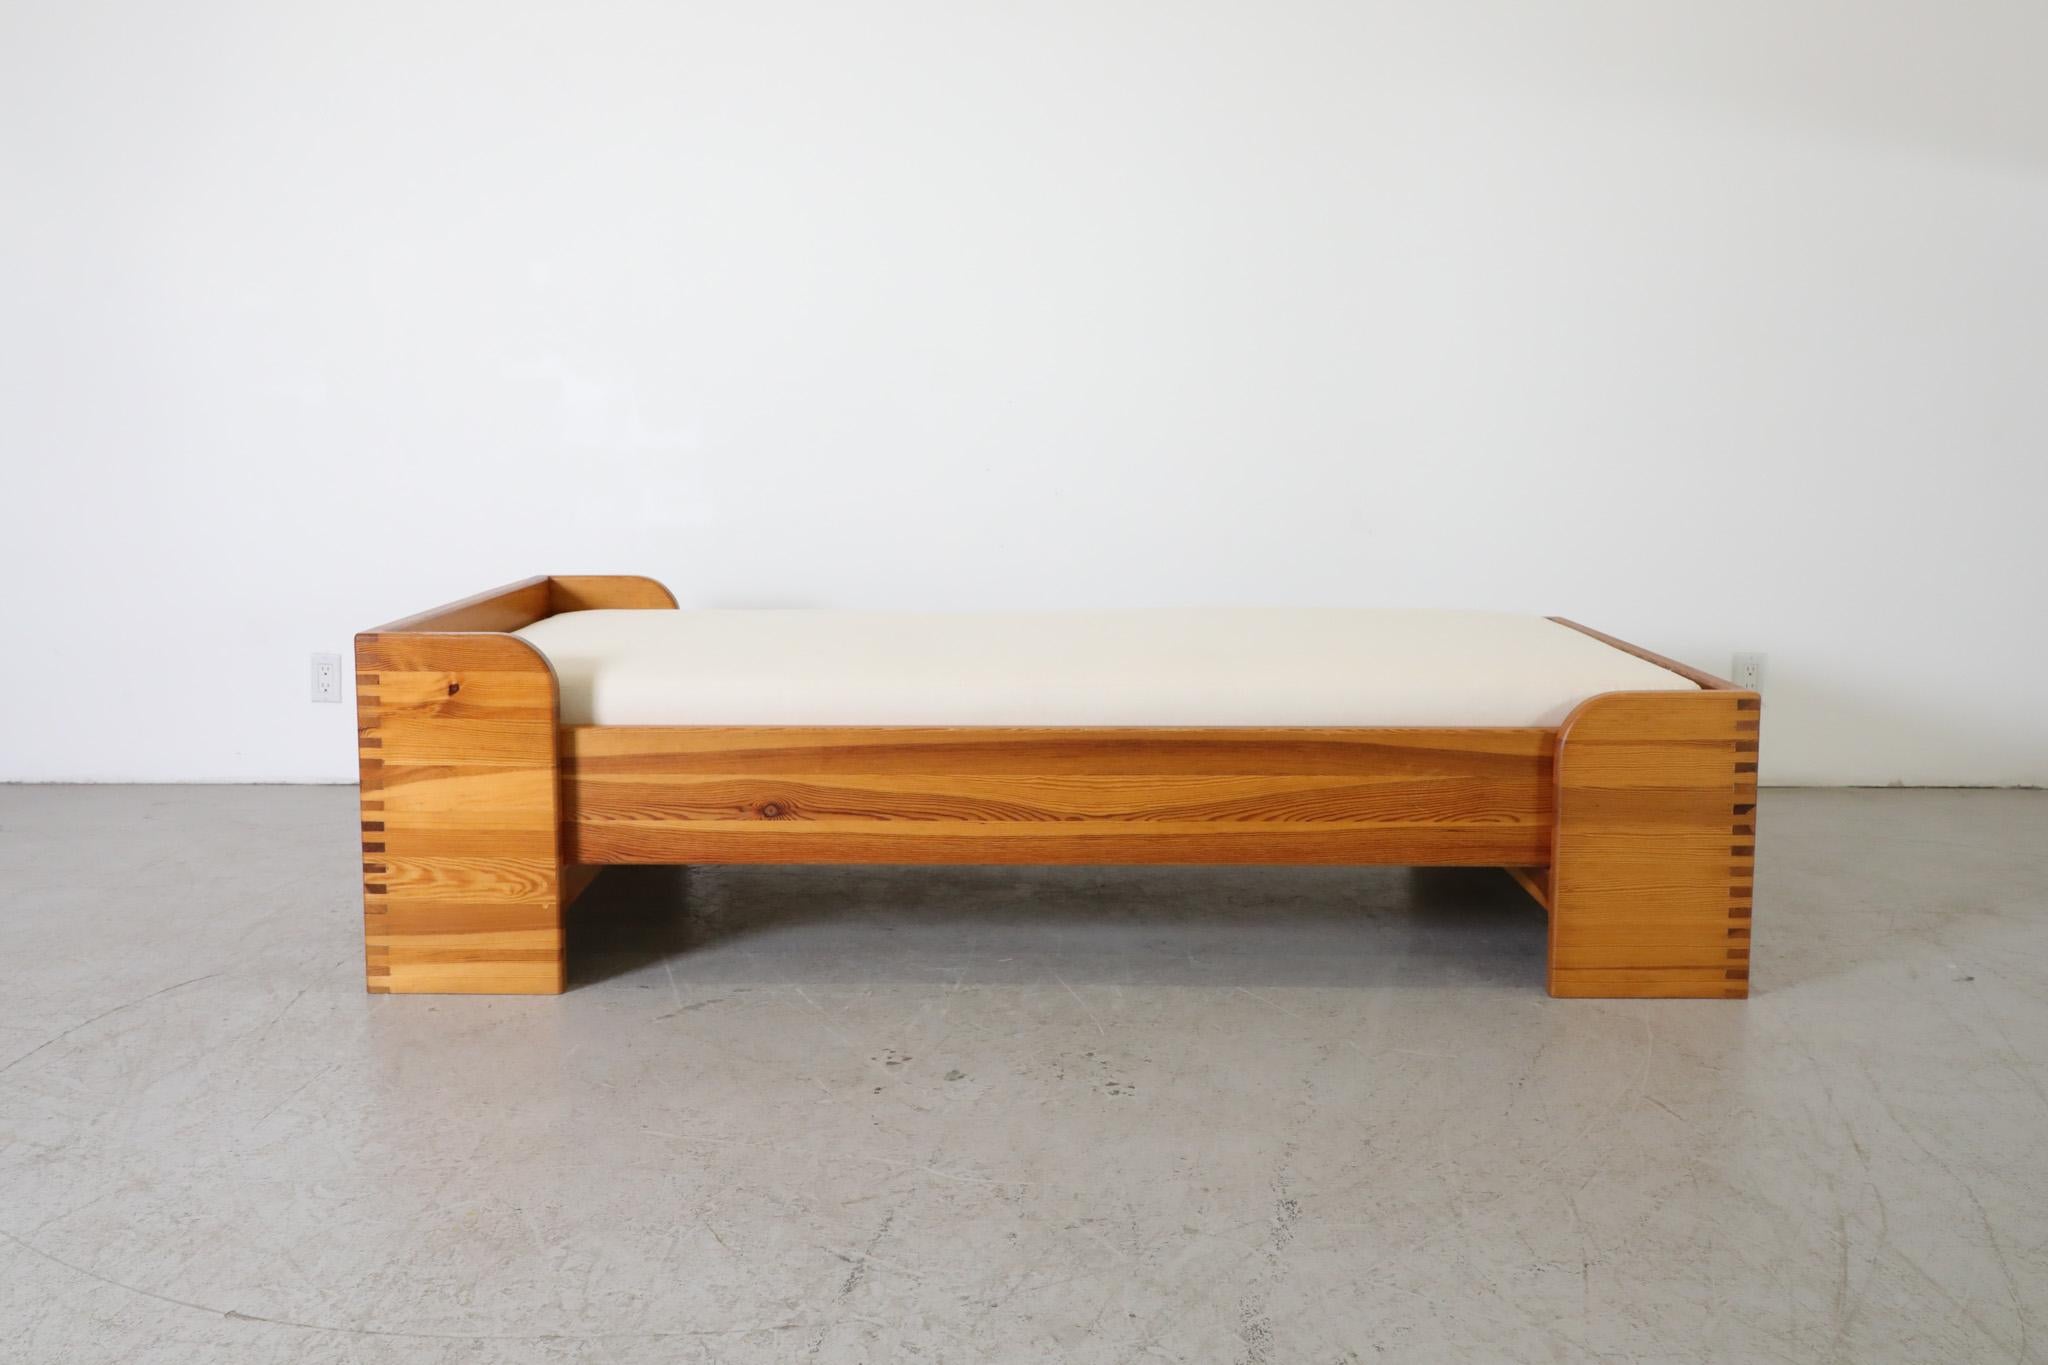 Cadre de lit simple du milieu du siècle dernier par Ate Van Apeldoorn pour Houtwerk Hattem, années 1960. Fabriqué en pin massif avec des joints en caisson et des arcs sur la base, ce cadre de taille européenne convient à un matelas simple de 3' x